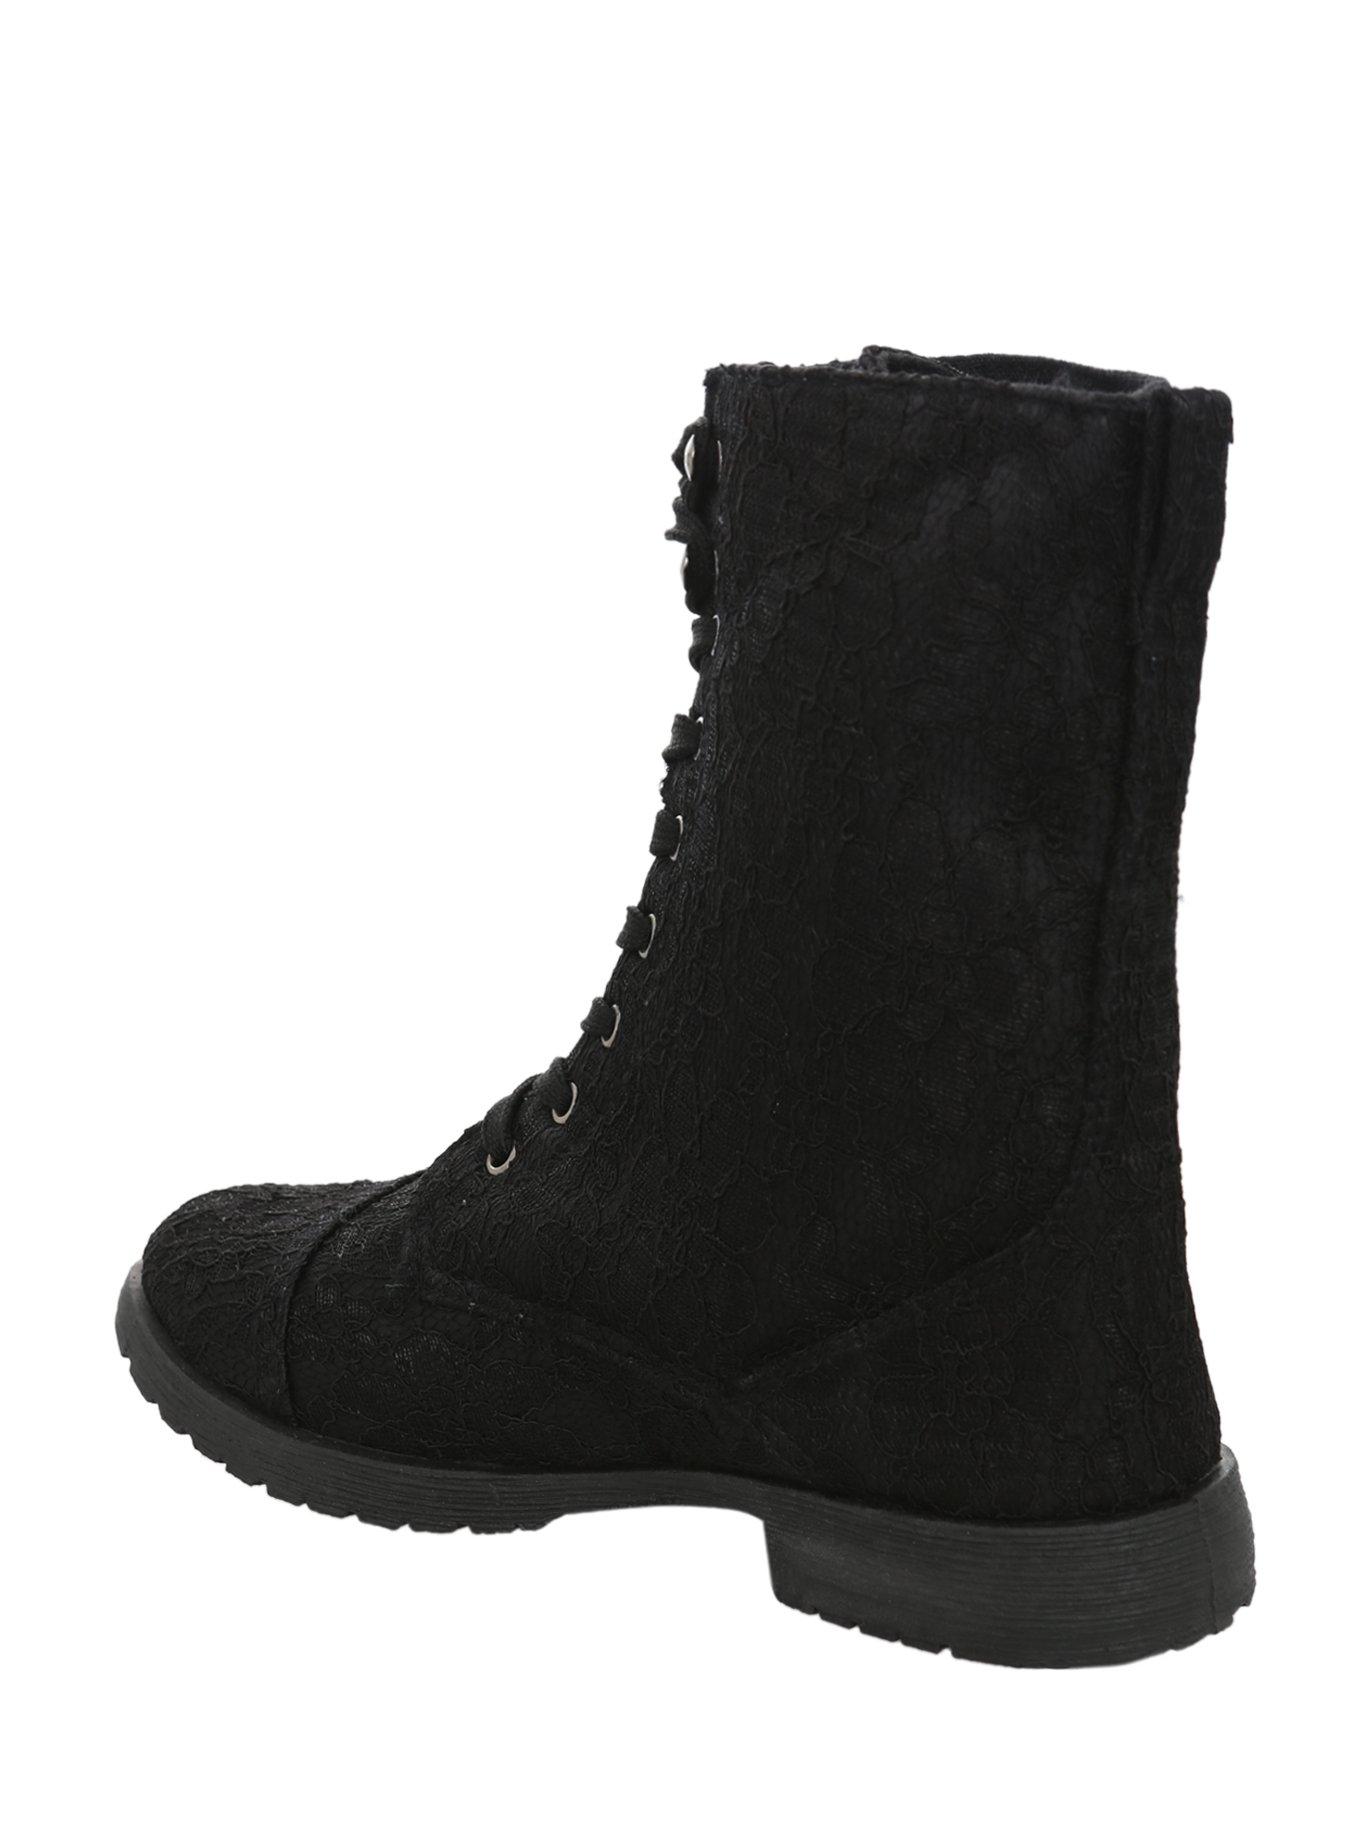 Black Lace Combat Boots, , alternate